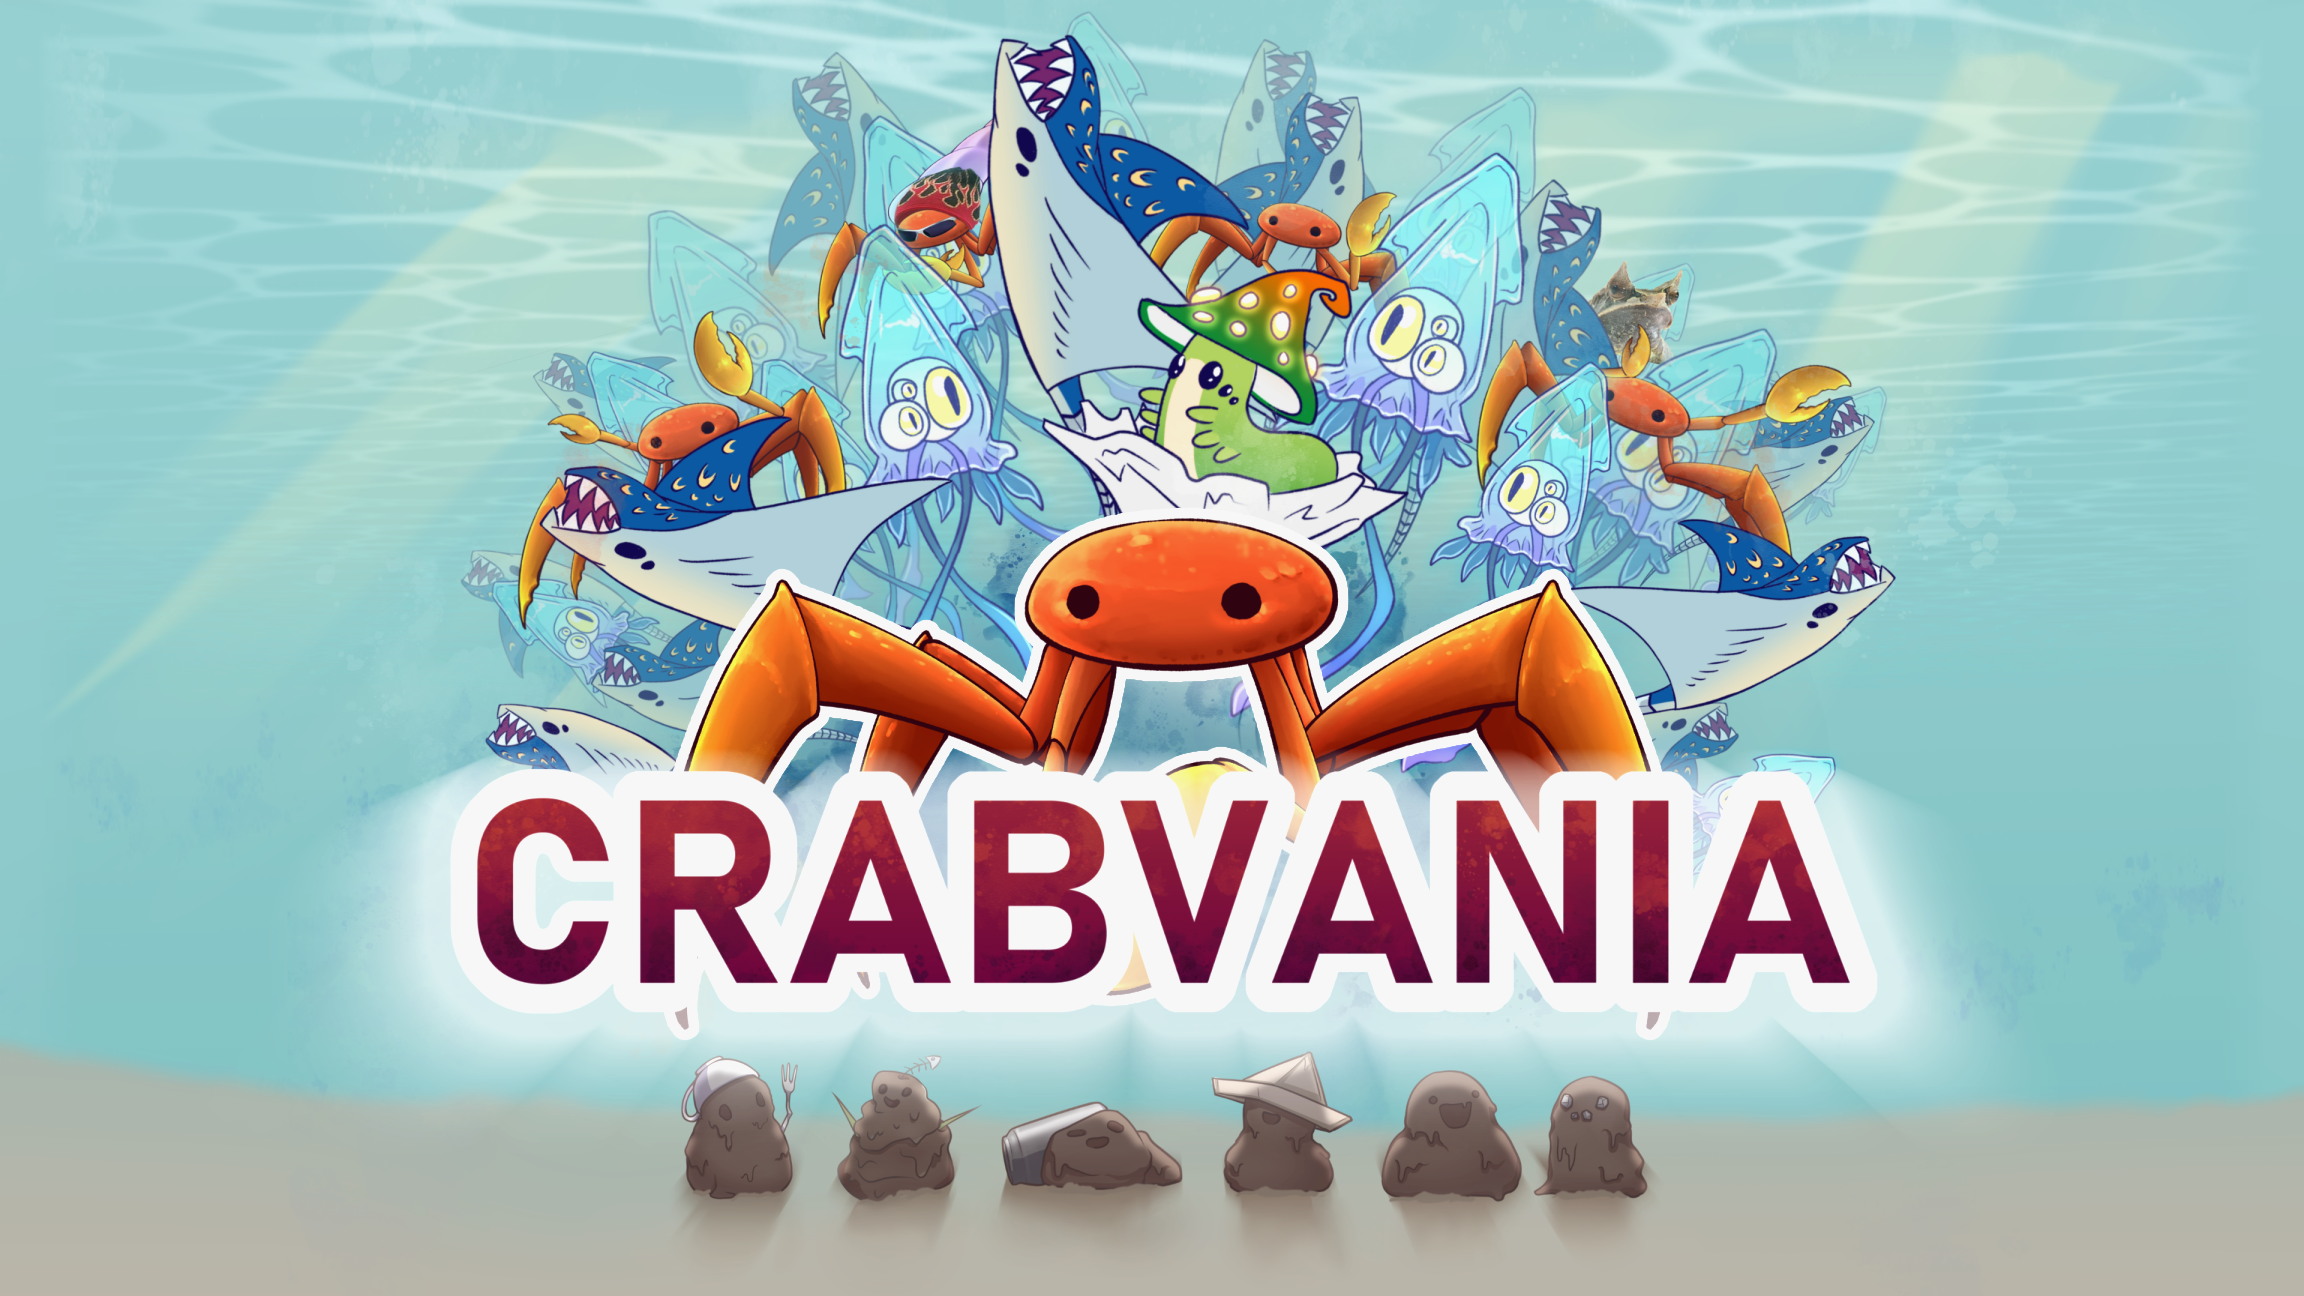 Crabvania - Prototype